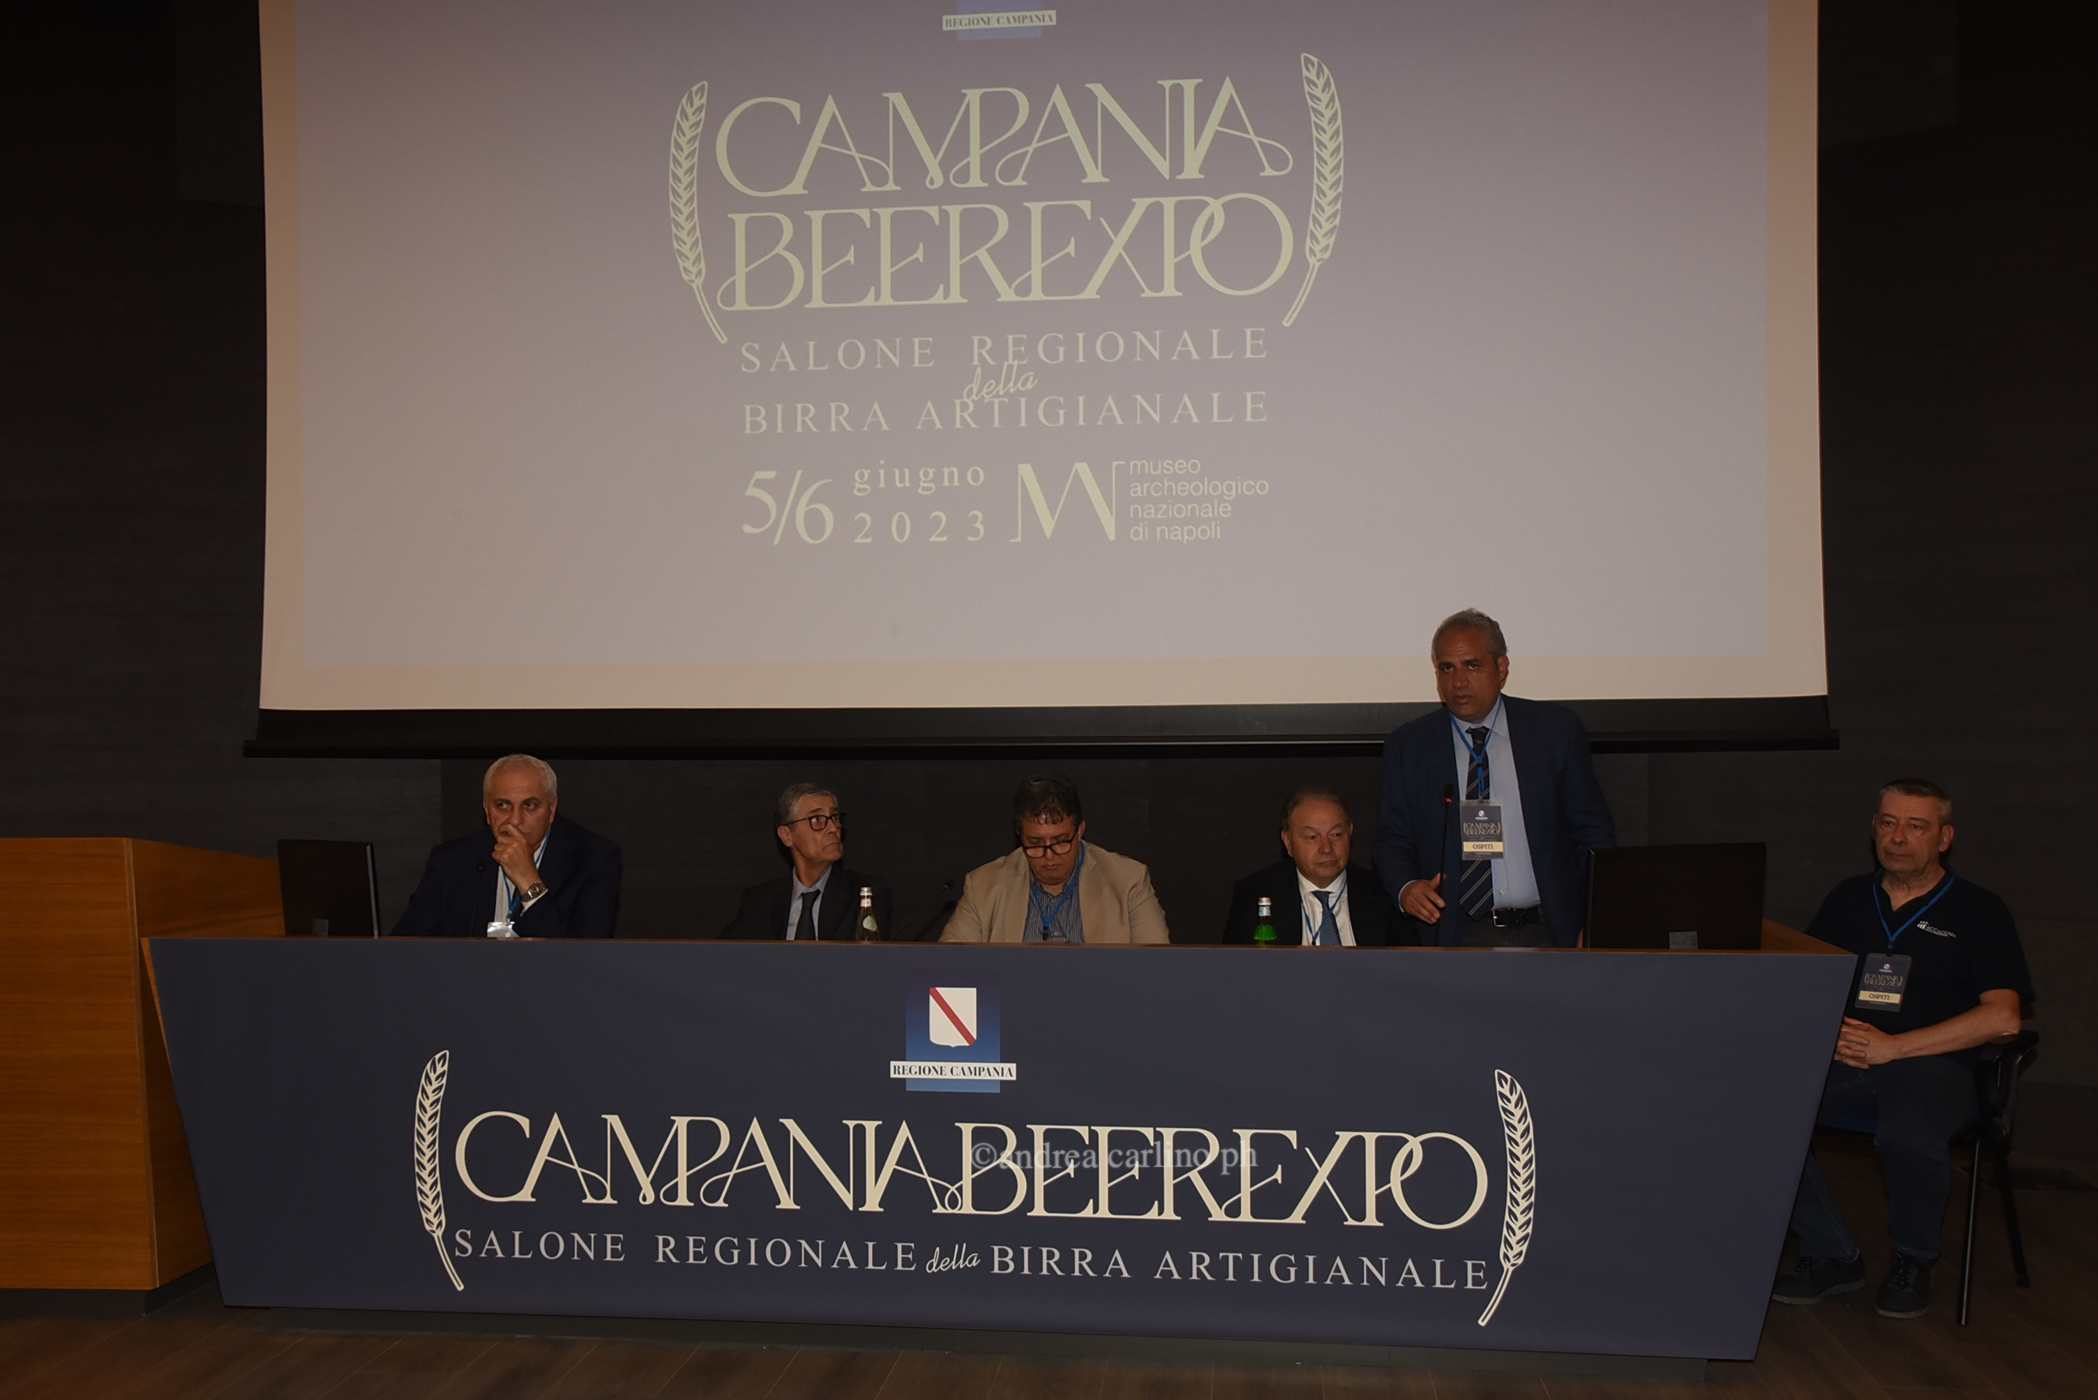 Napoli - Campania Beer Expo, Salone Regionale della Birra Artigianale - Photogallery